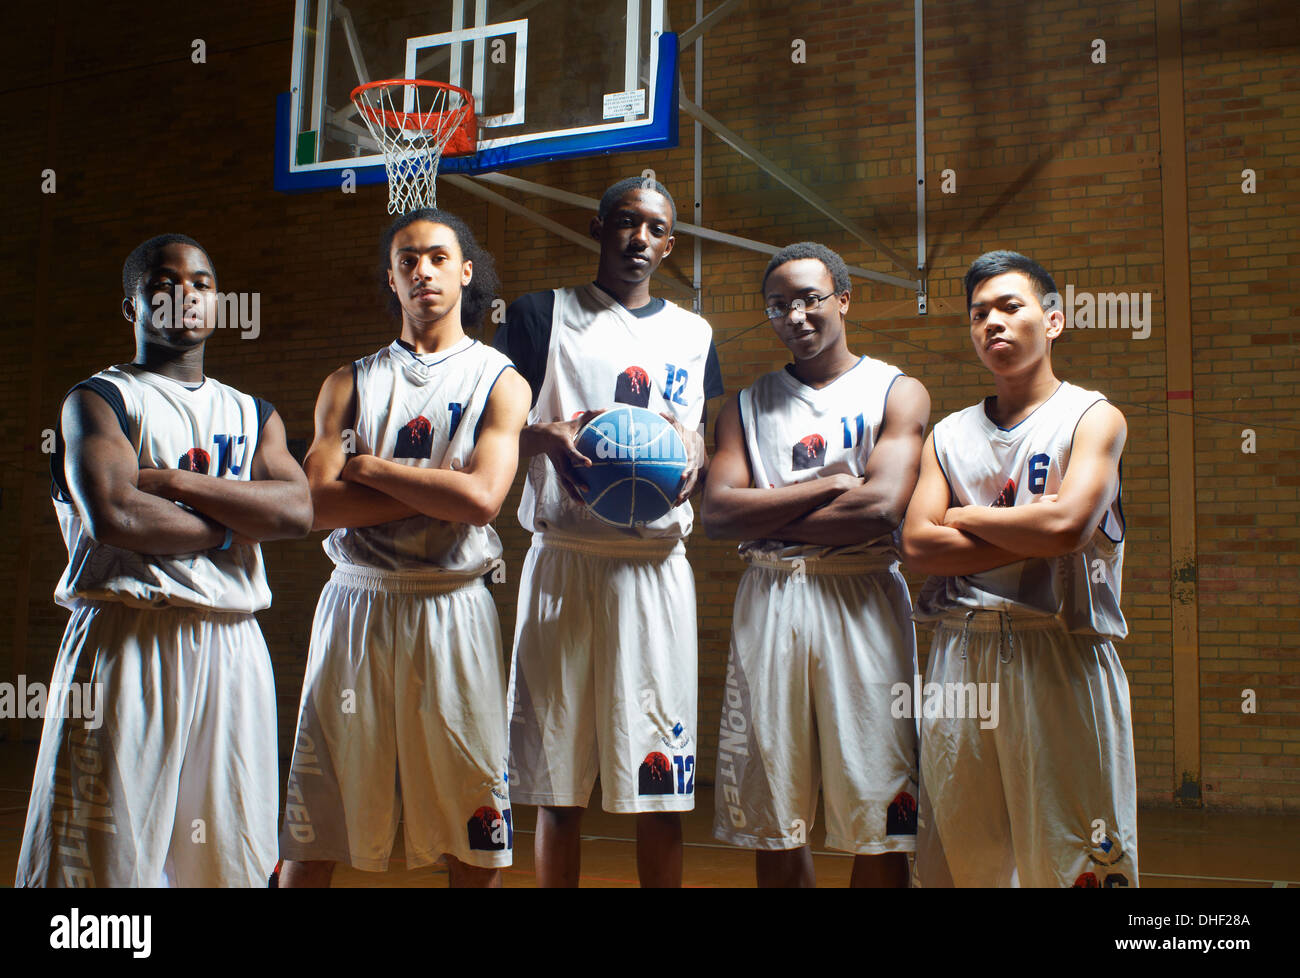 Portrait de l'équipe de basket-ball Banque D'Images